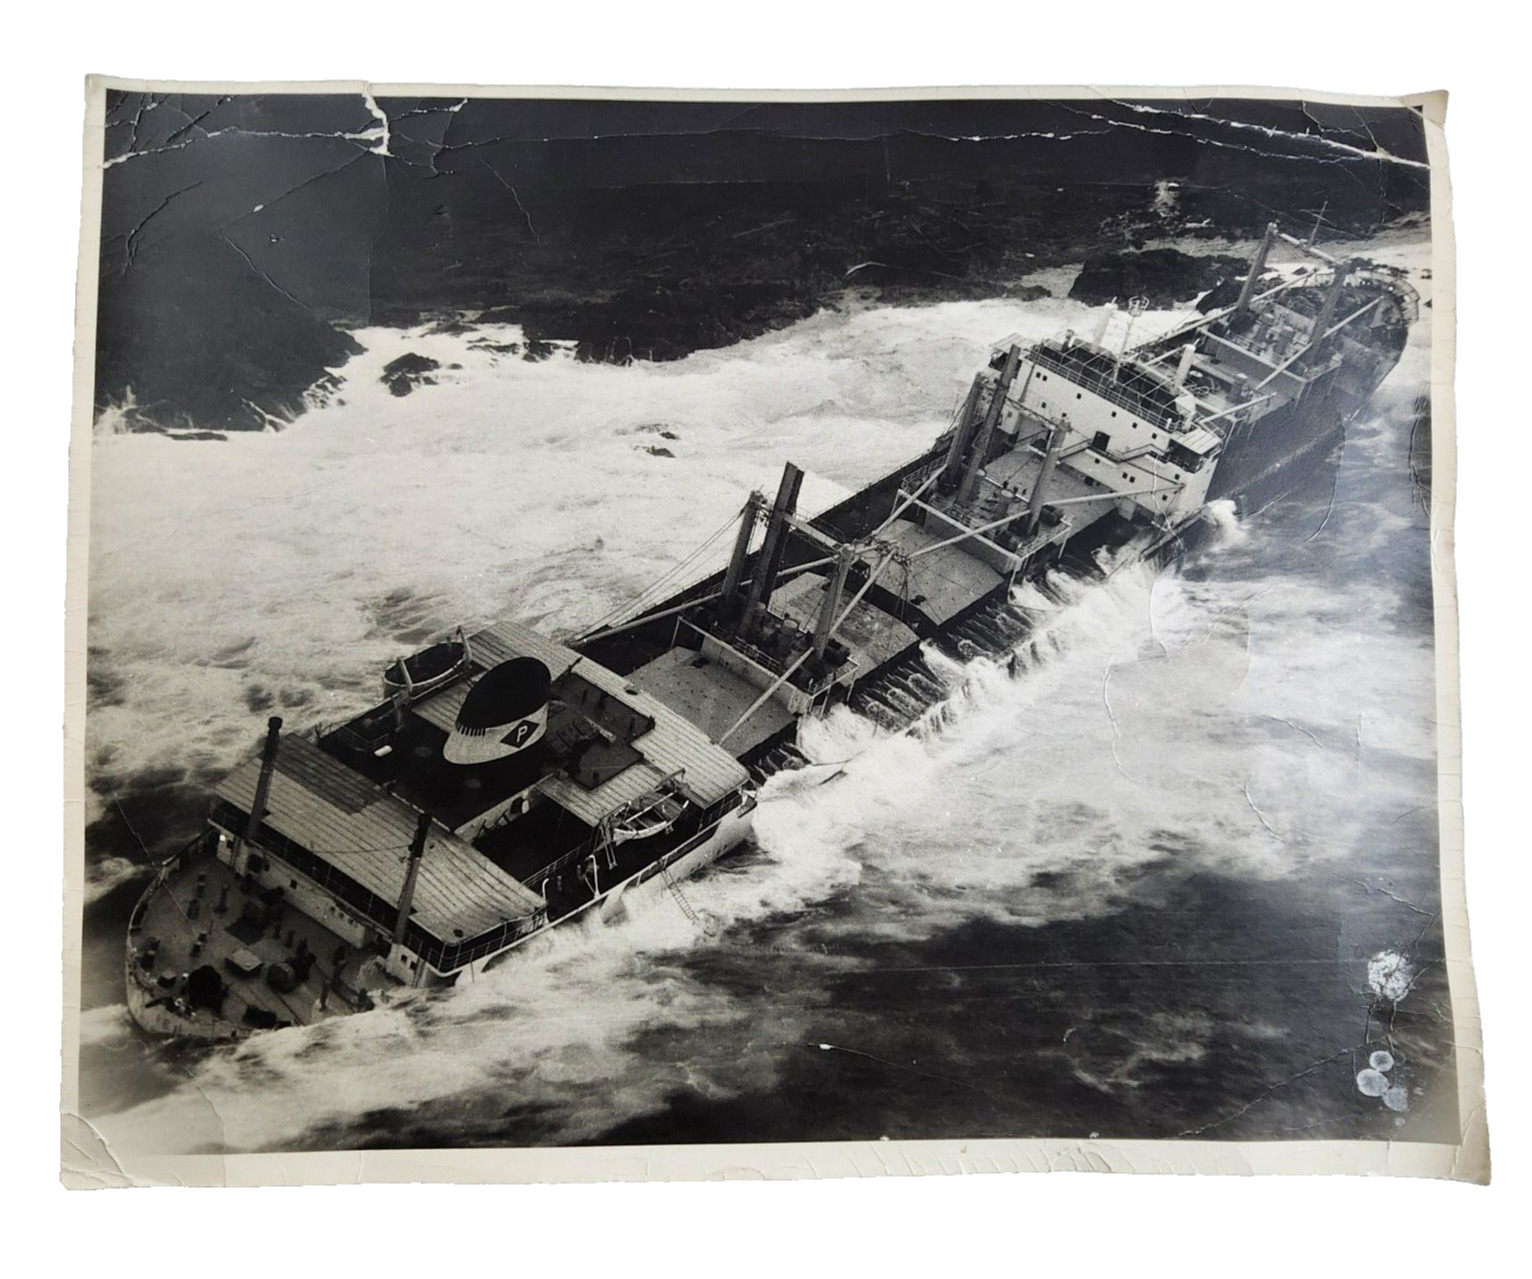 Vintage B&W Shipwreck Photograph 11x14